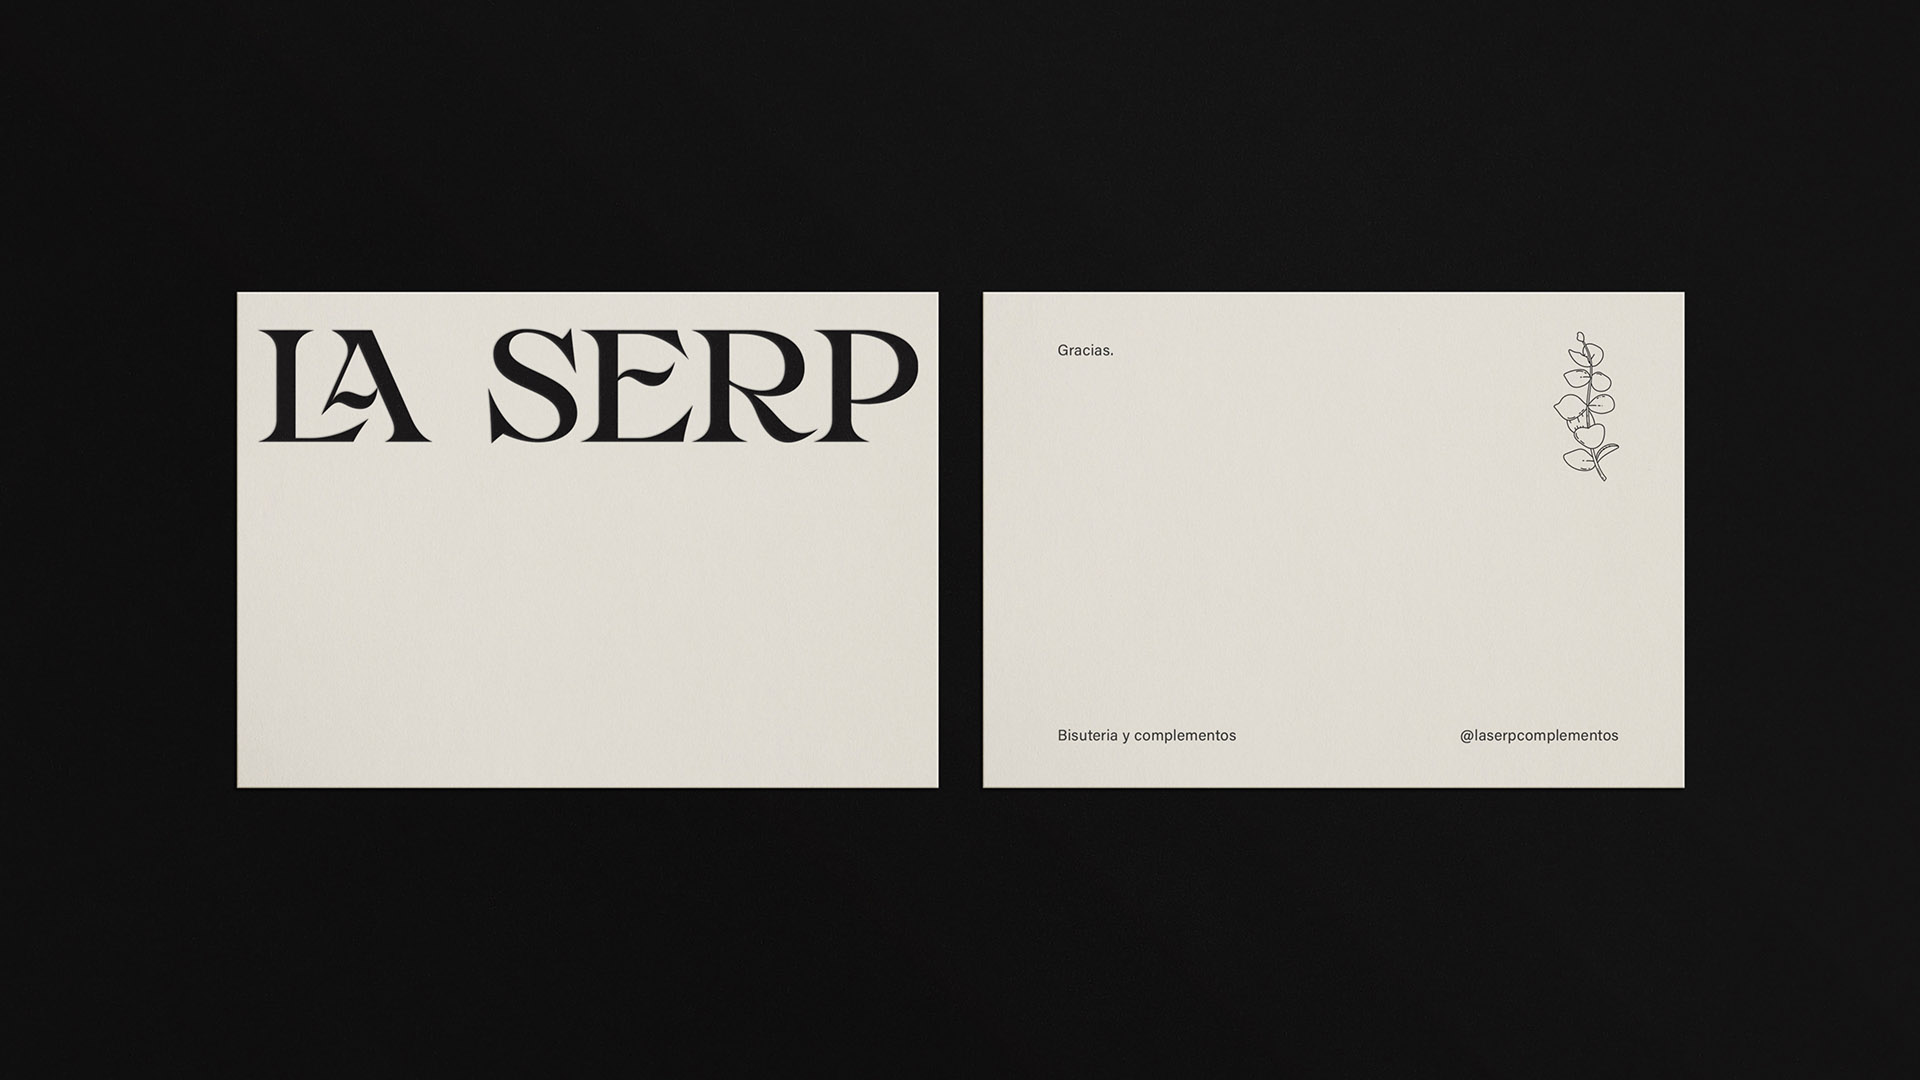 Branding - La Serp